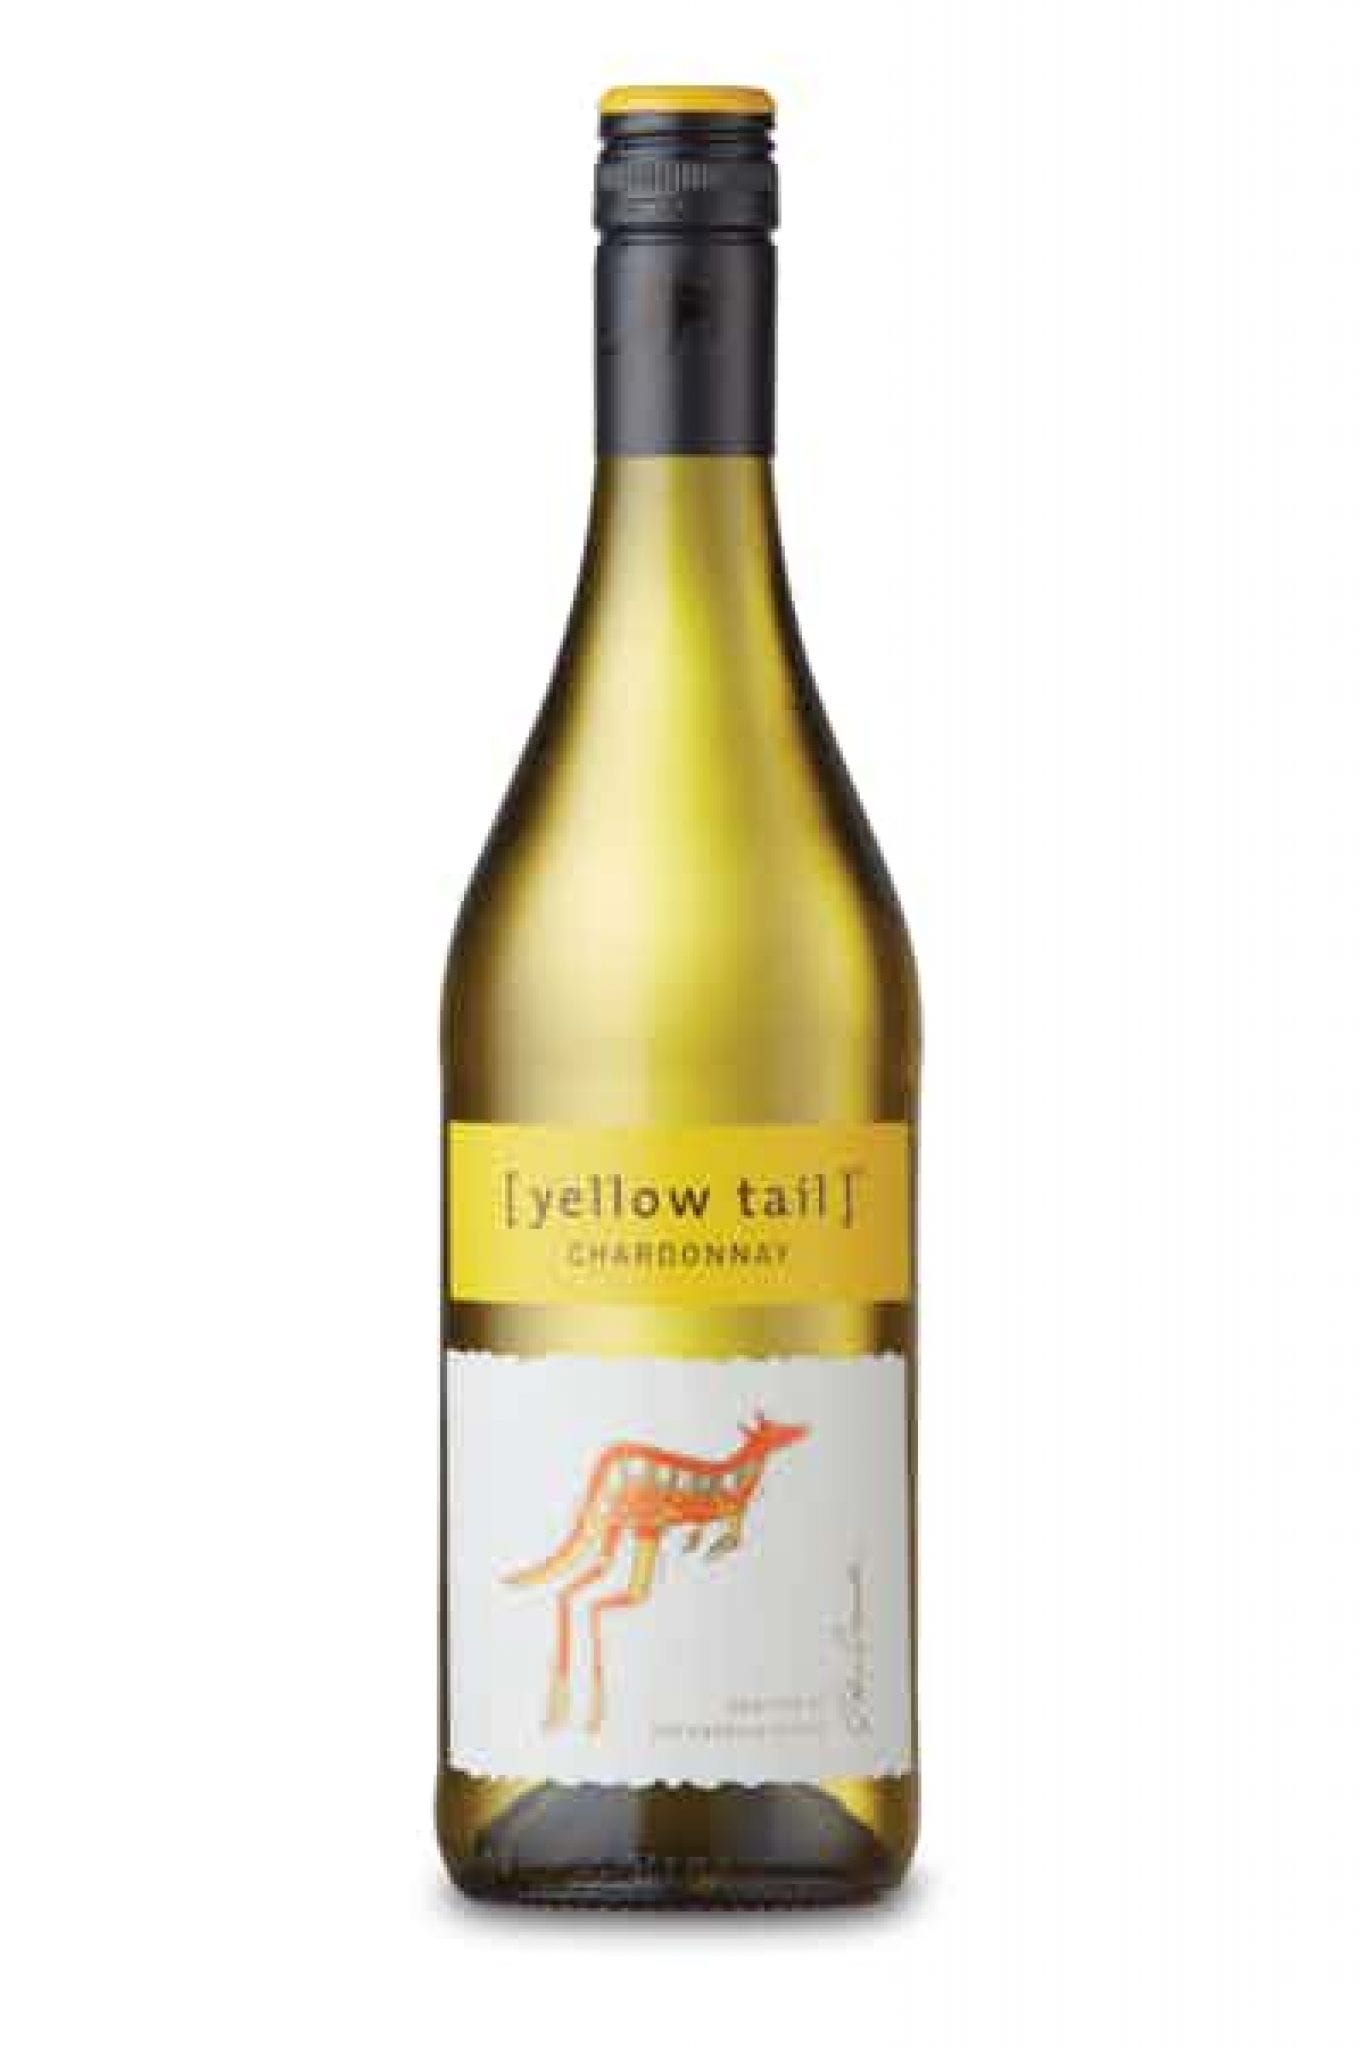 free-yellowtail-wine-at-walmart-glitchndealz